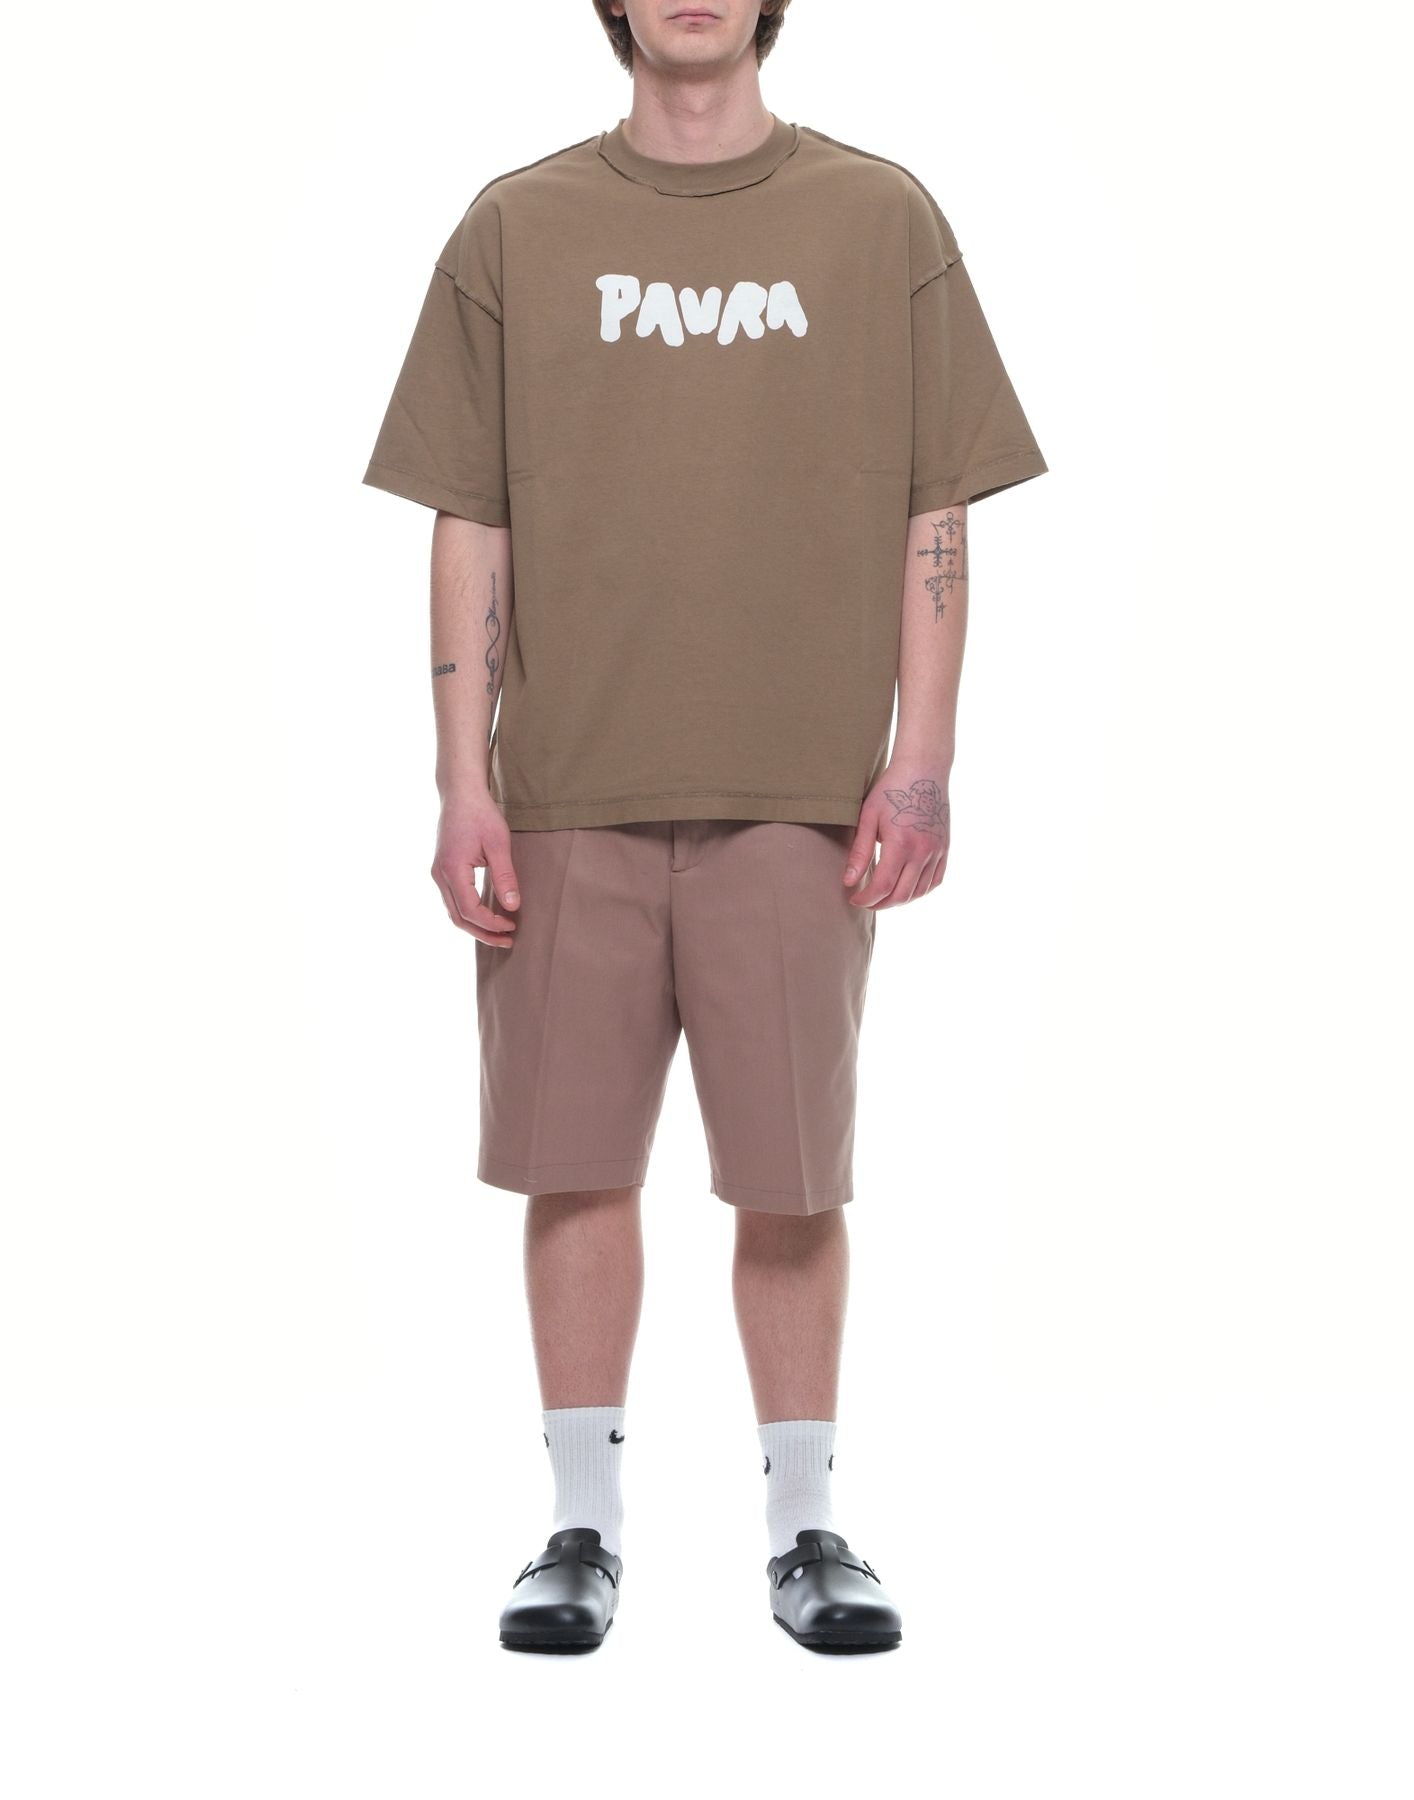 T-shirt man T-SHIRT BOLD COSTA OVERSIZED PAURA